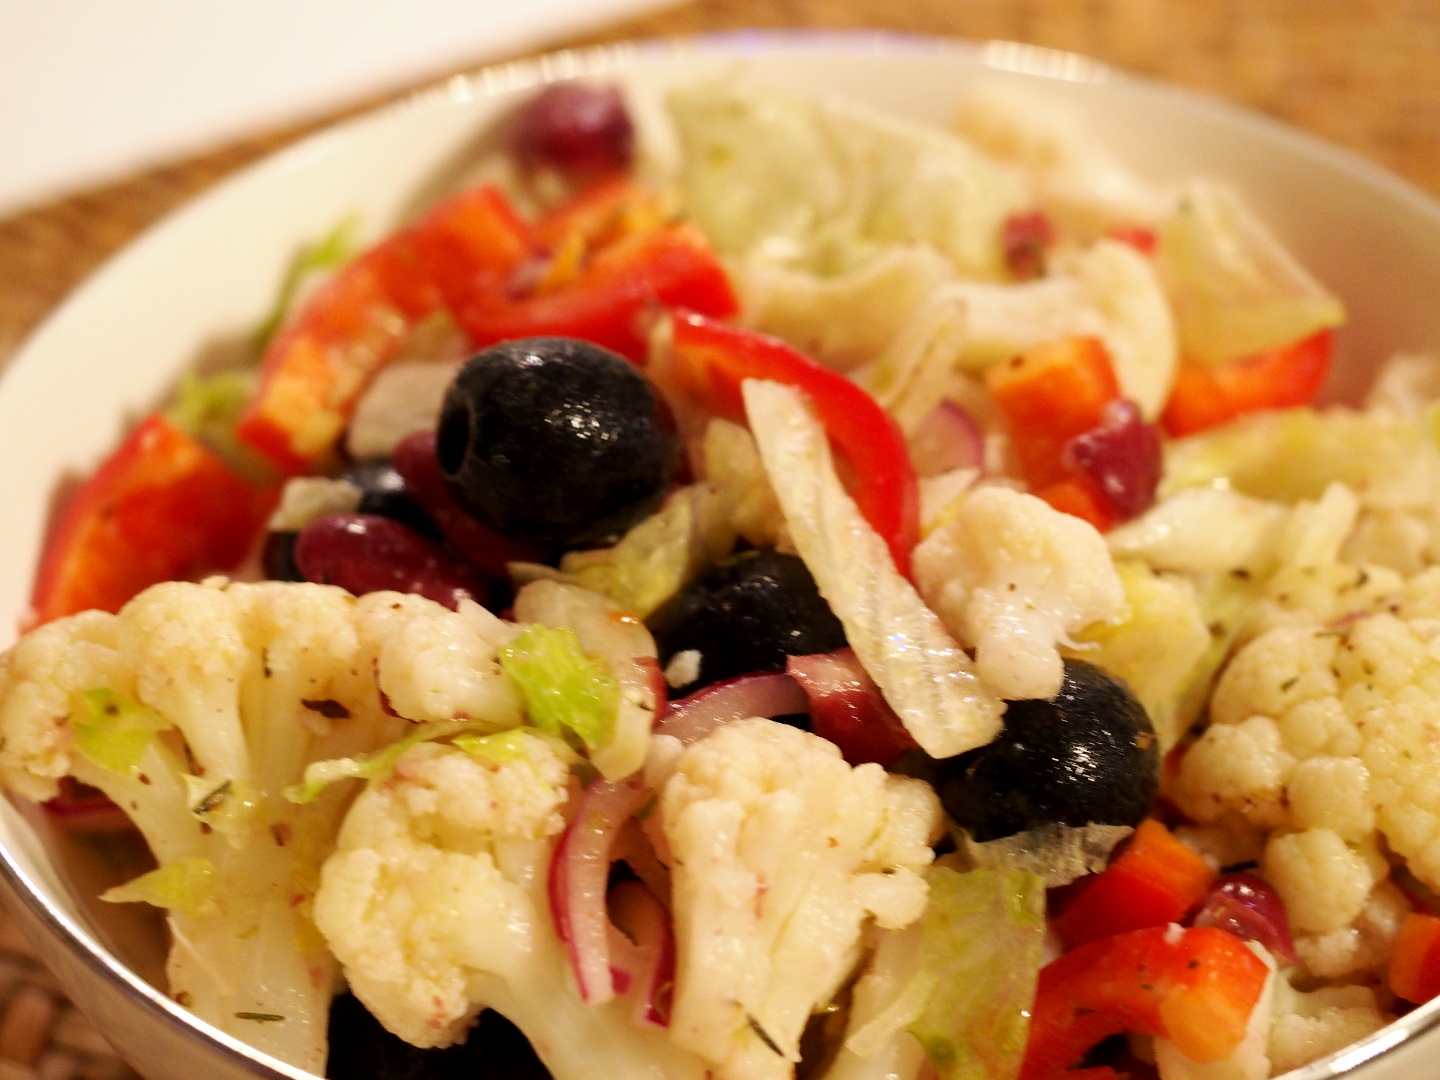 Eine Schüssel gefüllt mit dem Salat aus Blumenkohl, Paparika, Eisbergsalat und schwarzen Oliven